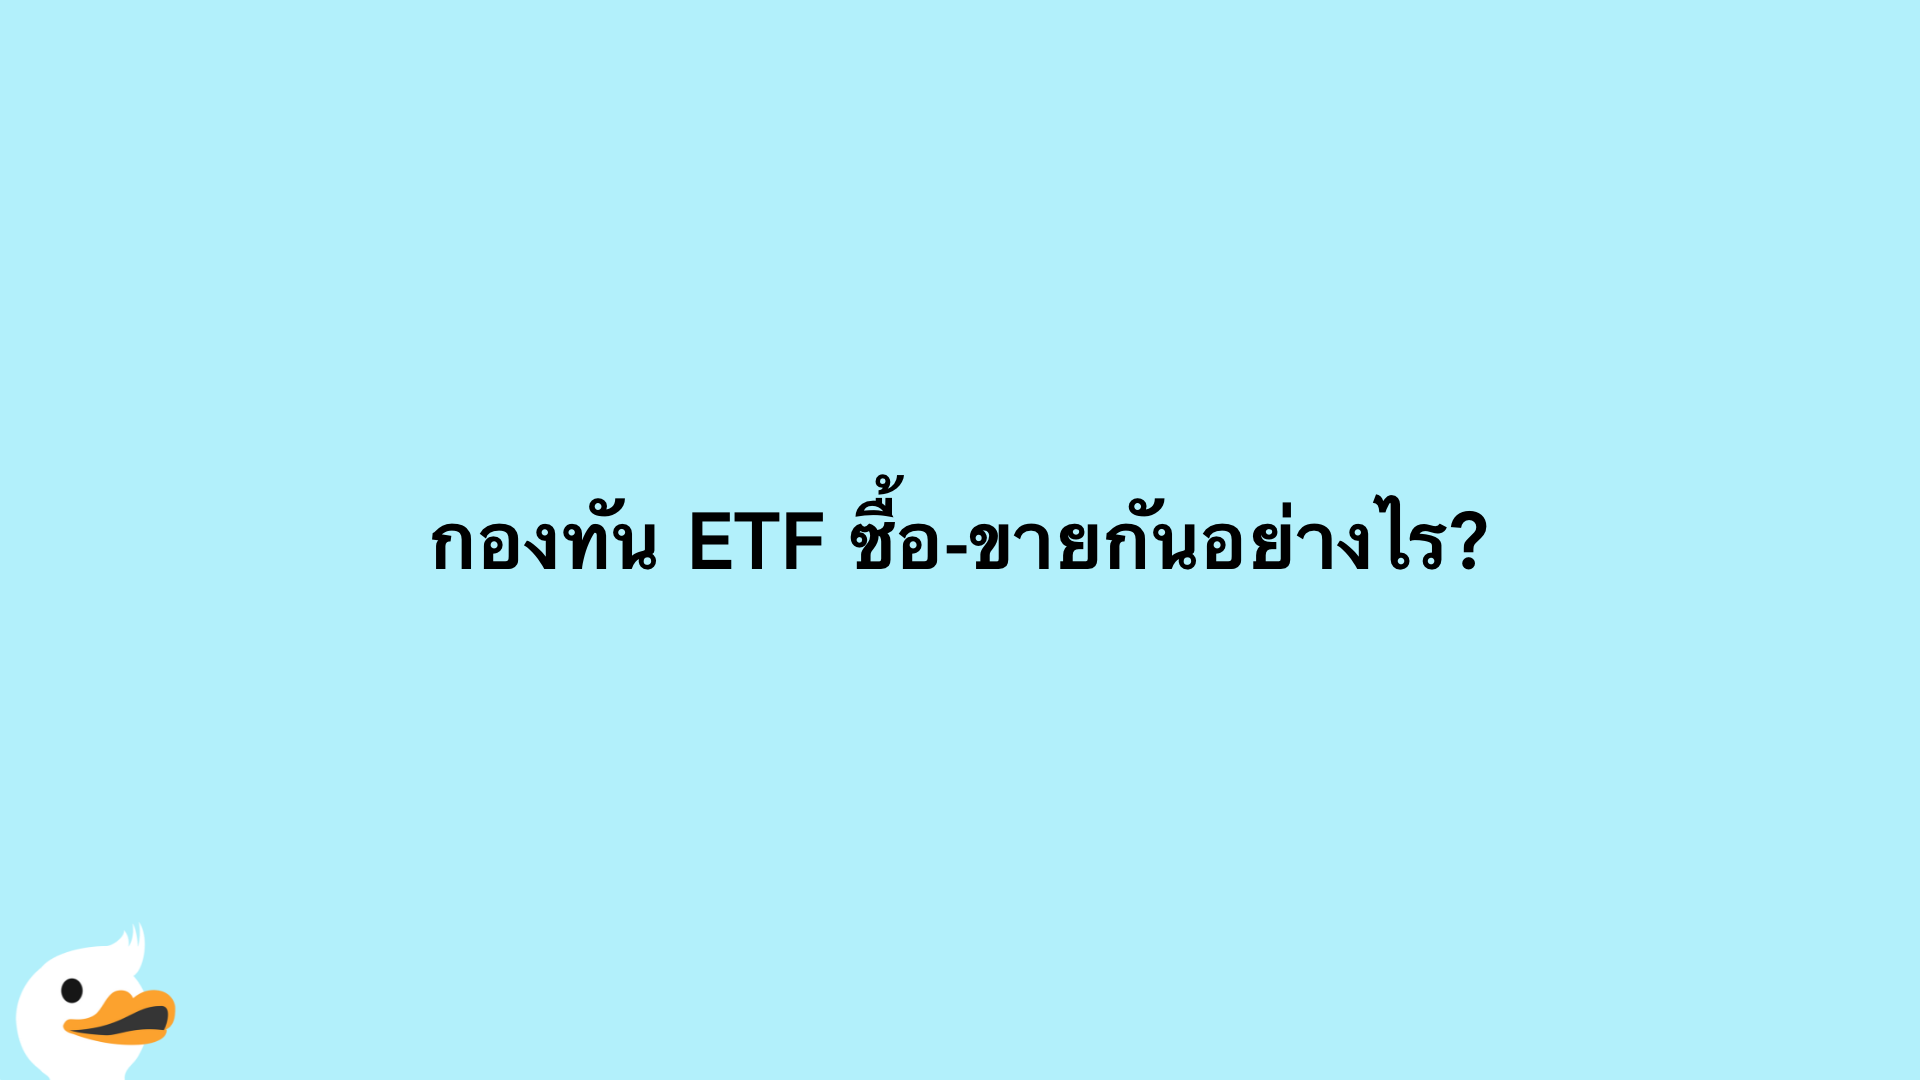 กองทัน ETF ซื้อ-ขายกันอย่างไร?